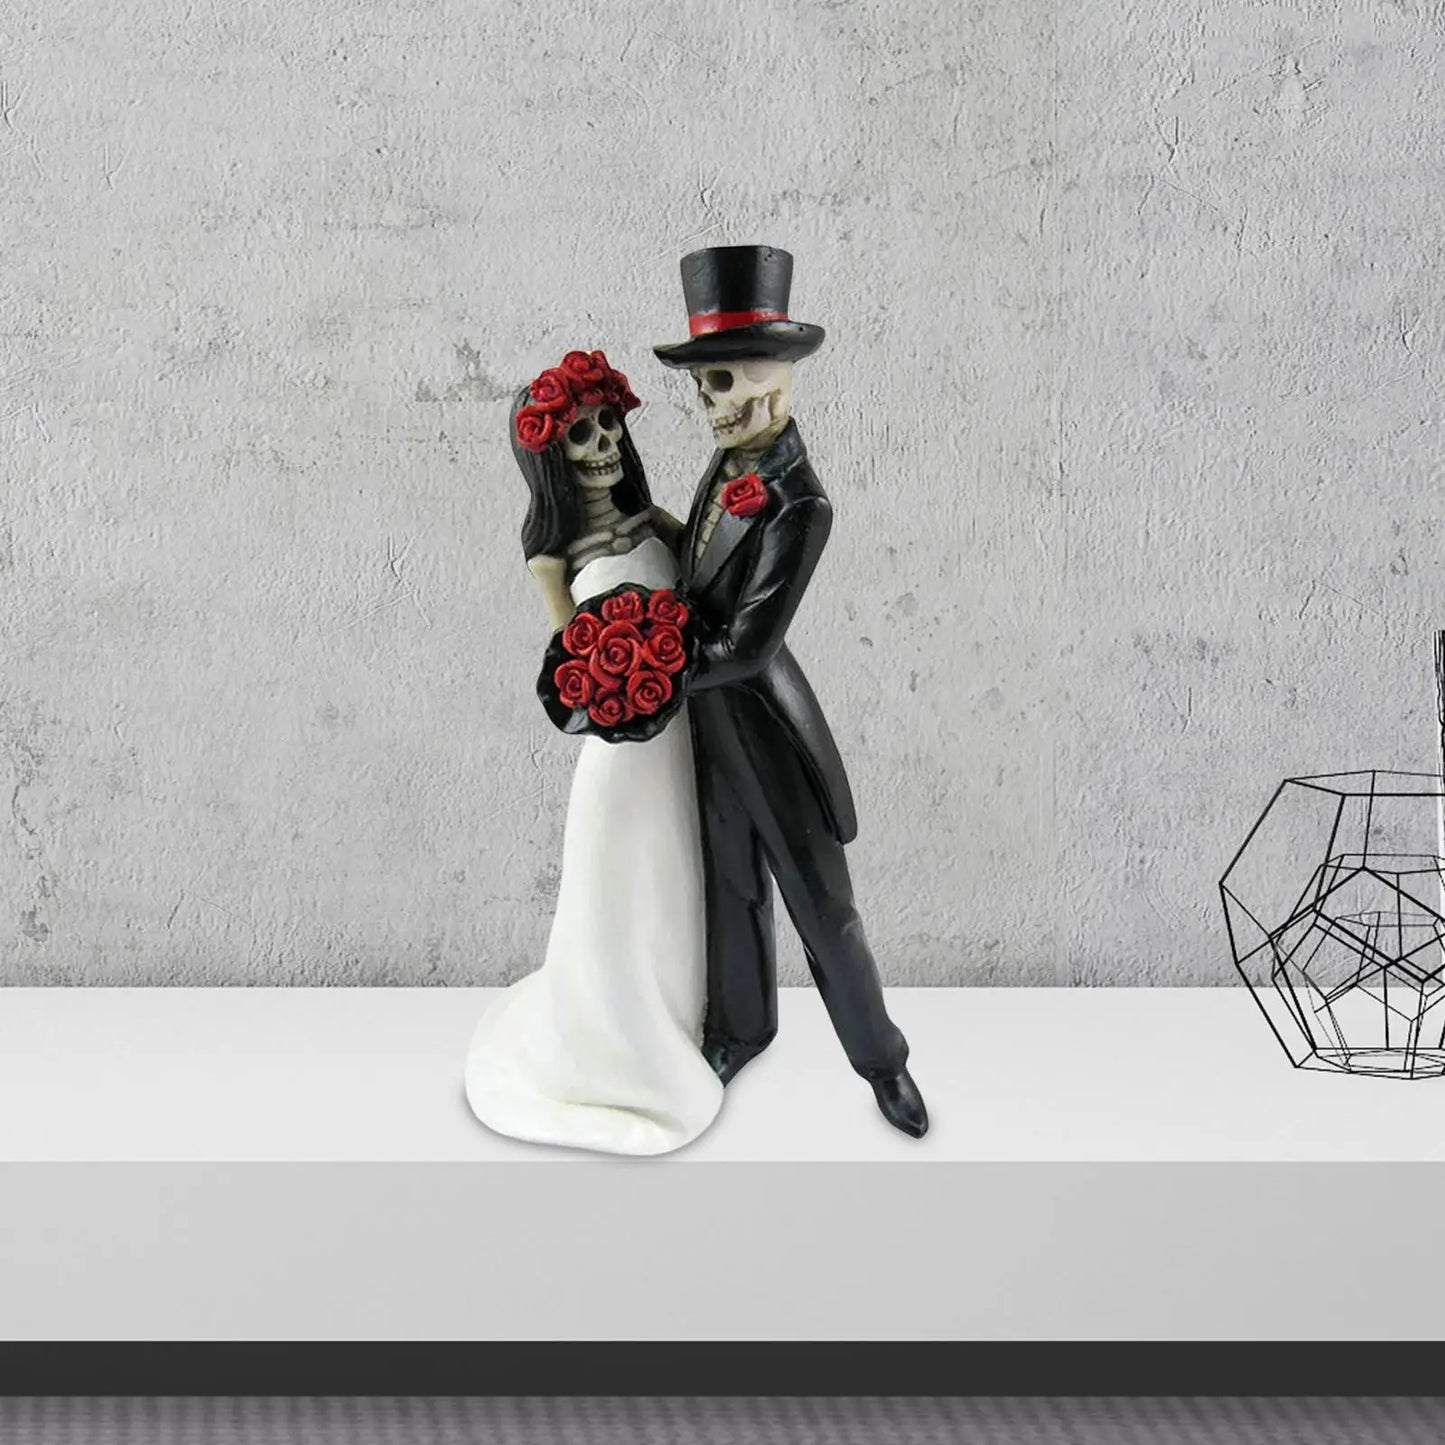 Totenkopf-Statue, Skelett, Hochzeitspaar, Braut, Kunst für Desktop-Dekorationen, Ornamente, Sammlerstück, Halloween-Kuchenaufsatz